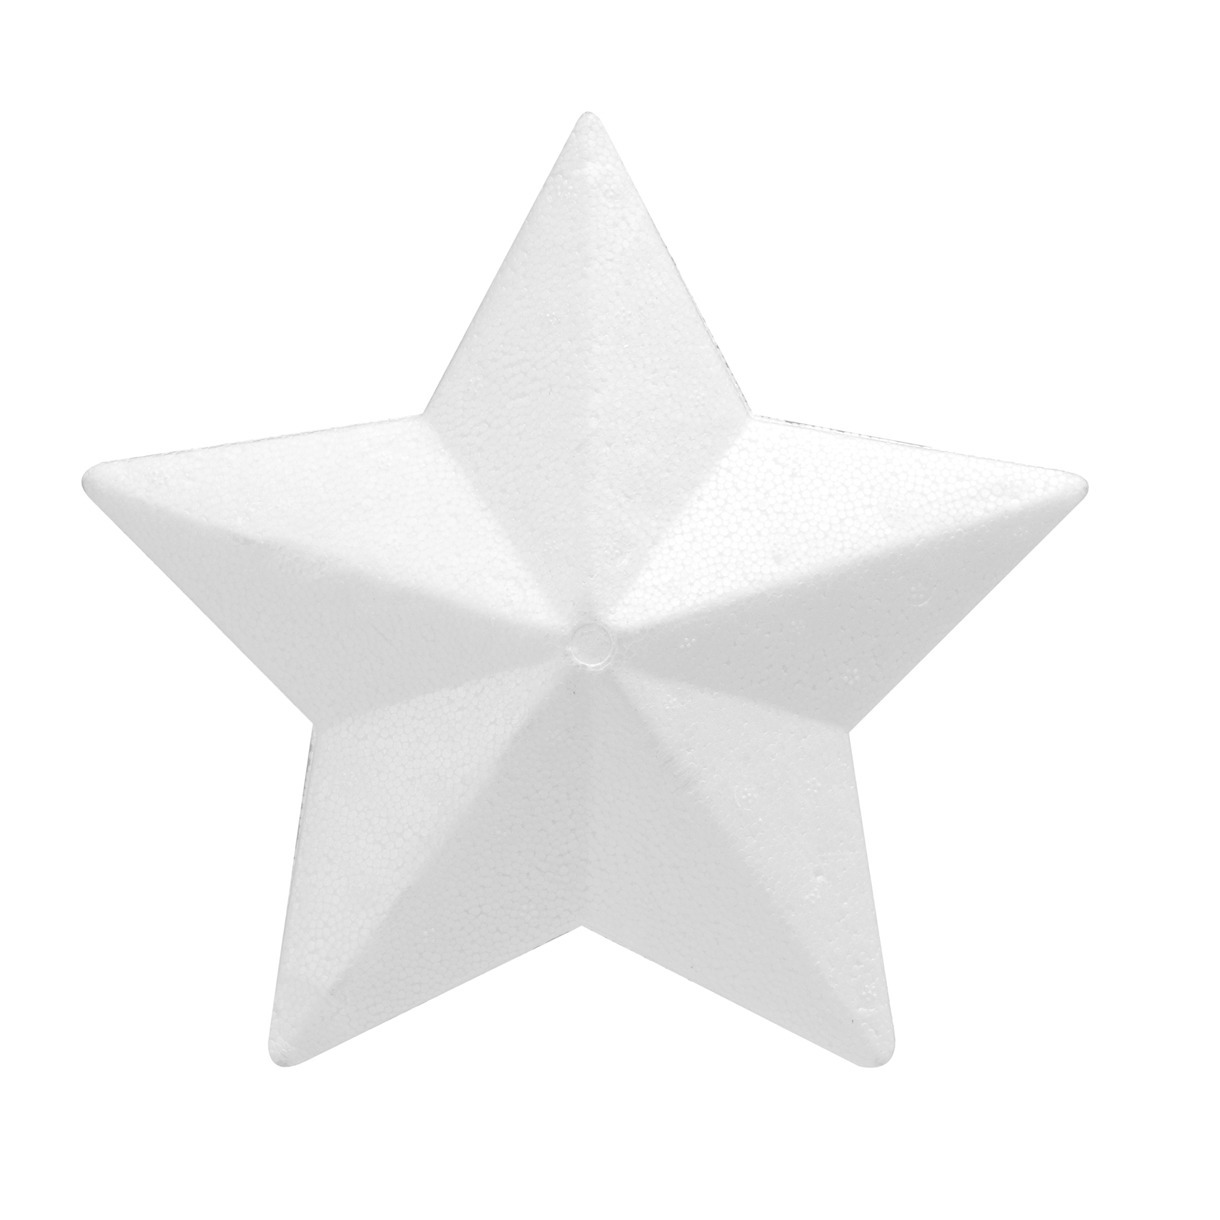 Piepschuim hobby knutselen vormen-figuren ster van 25 cm